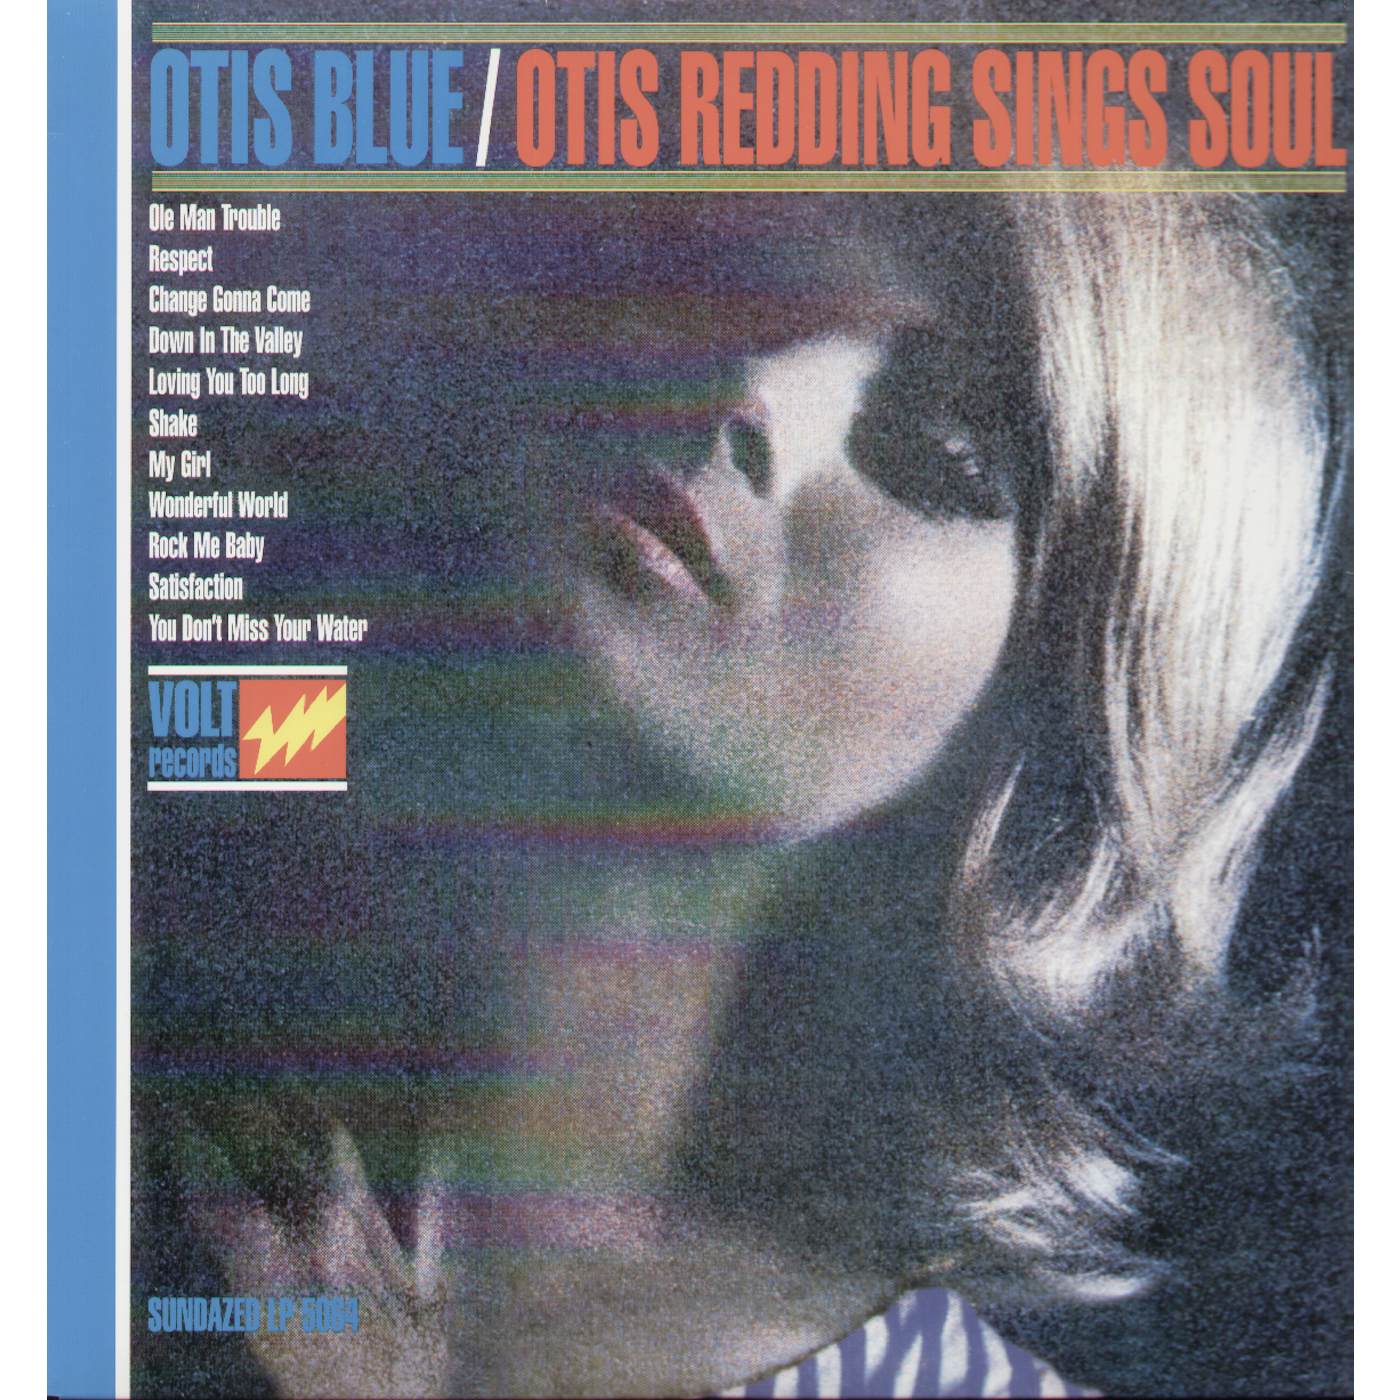 Otis Blue / Otis Redding Sings Soul Vinyl Record